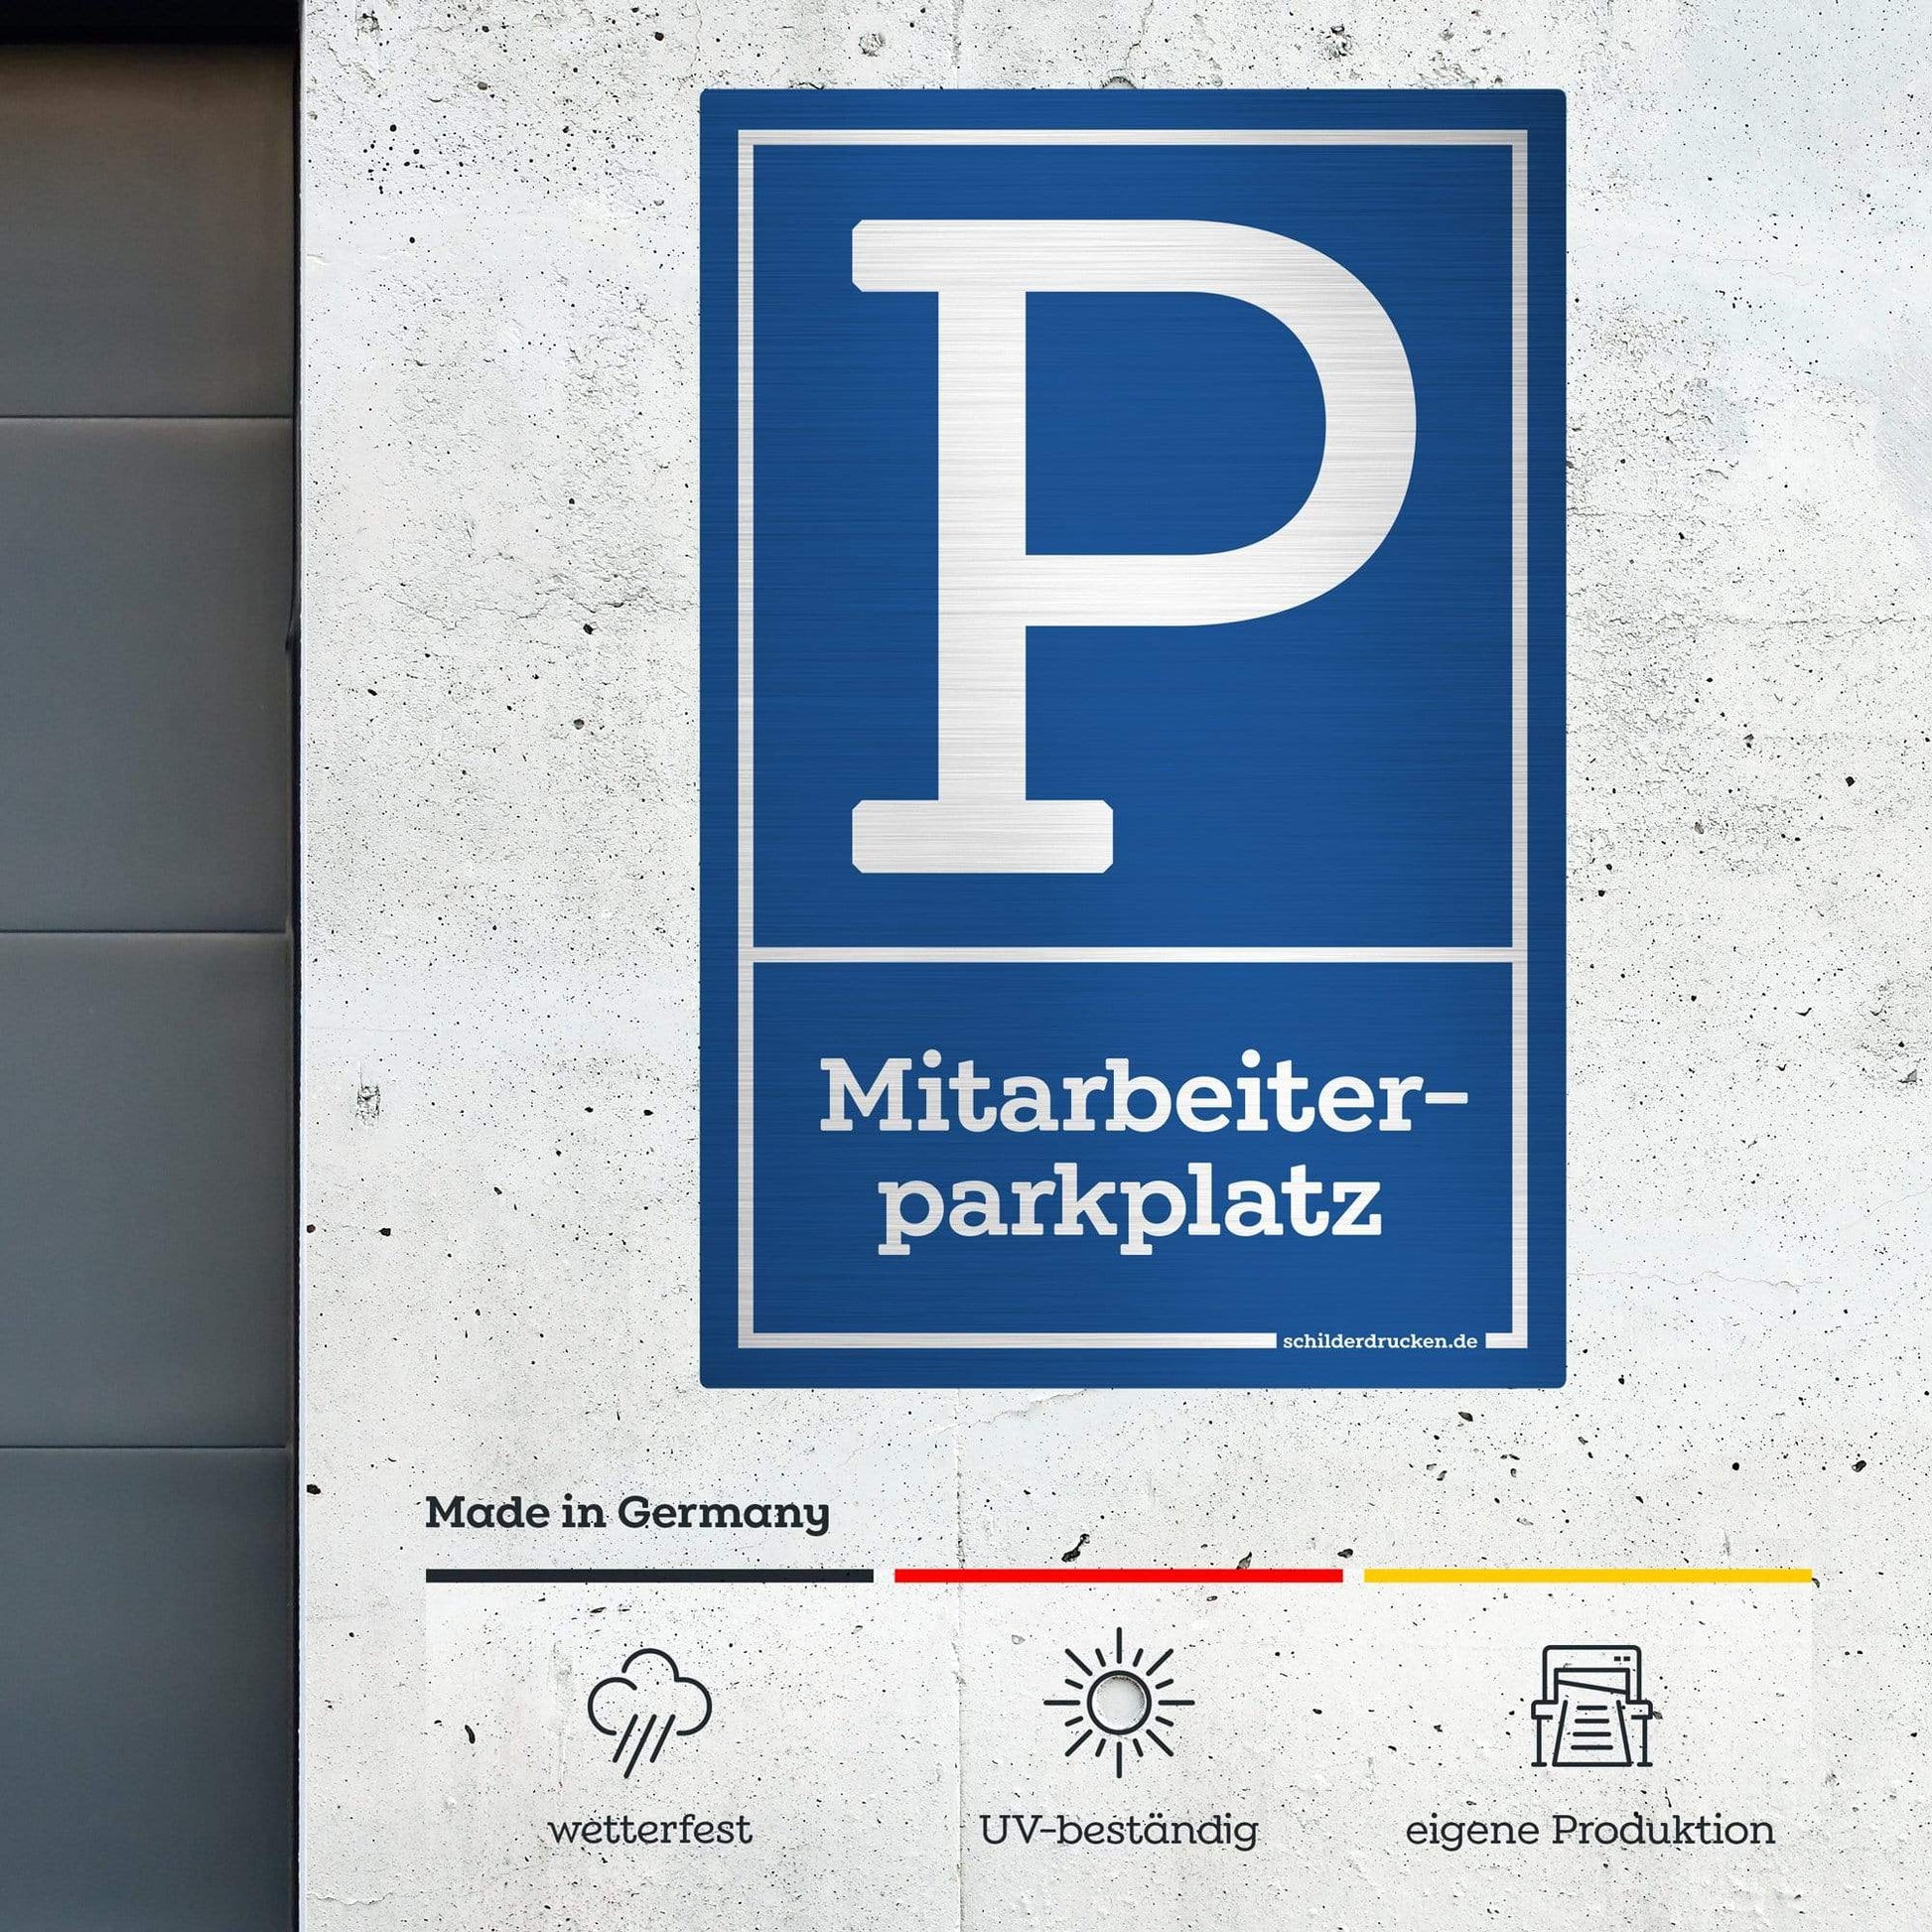 Mitarbeiterparkplatz 10 x 15 cm / silber gebürstet / Alu-Dibond online drucken lassen bei schilderdrucken.de